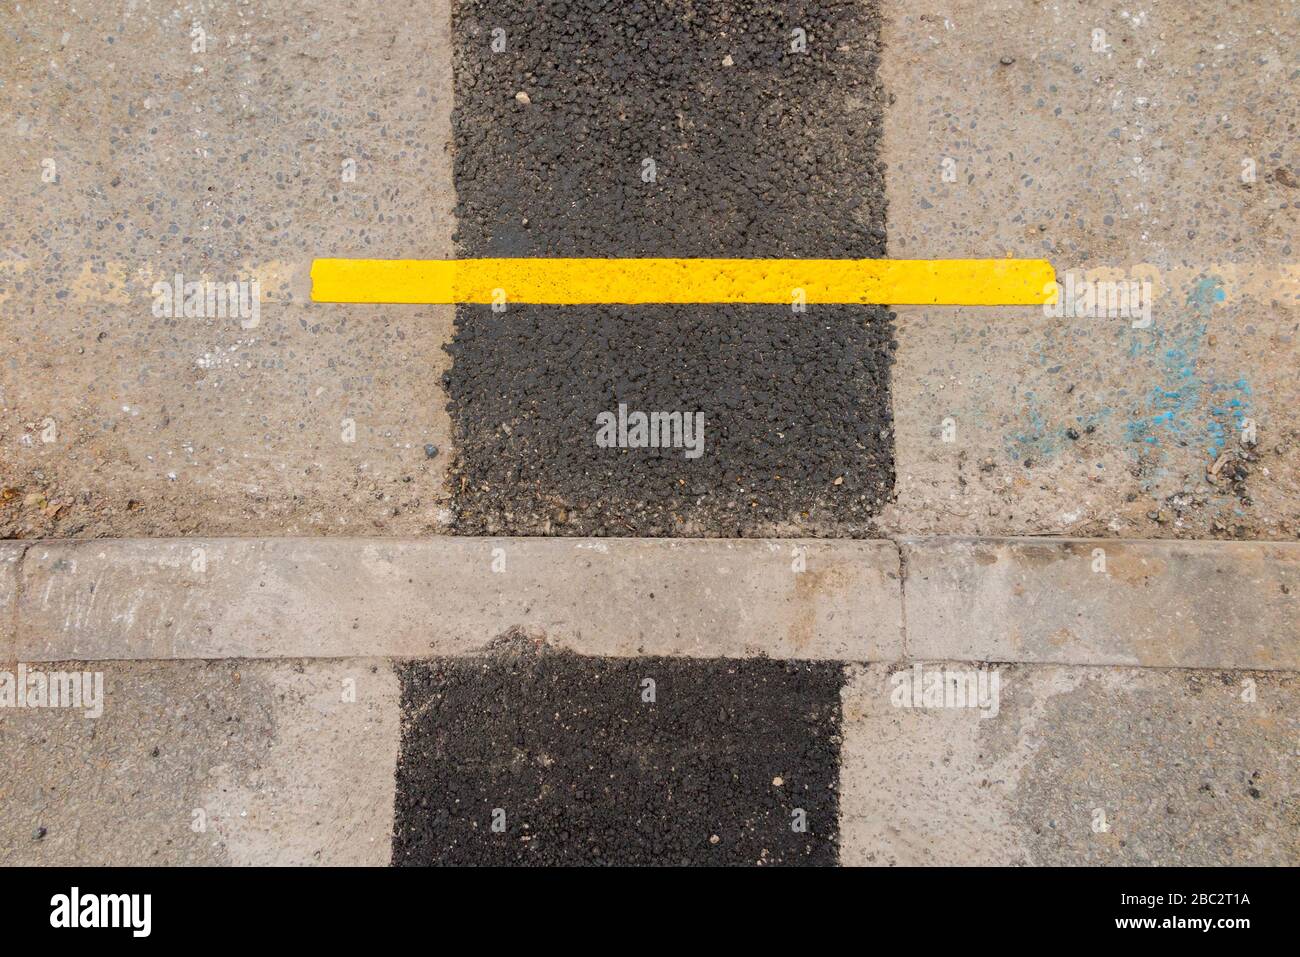 Eine sehr kurze Länge der neu lackierten Parksperrenbegrenzung der gelben Linie, bei der Straßenbauarbeiten die Oberfläche der Straßen in der Nähe der Bordsteinkante gestört haben. GROSSBRITANNIEN (116) Stockfoto